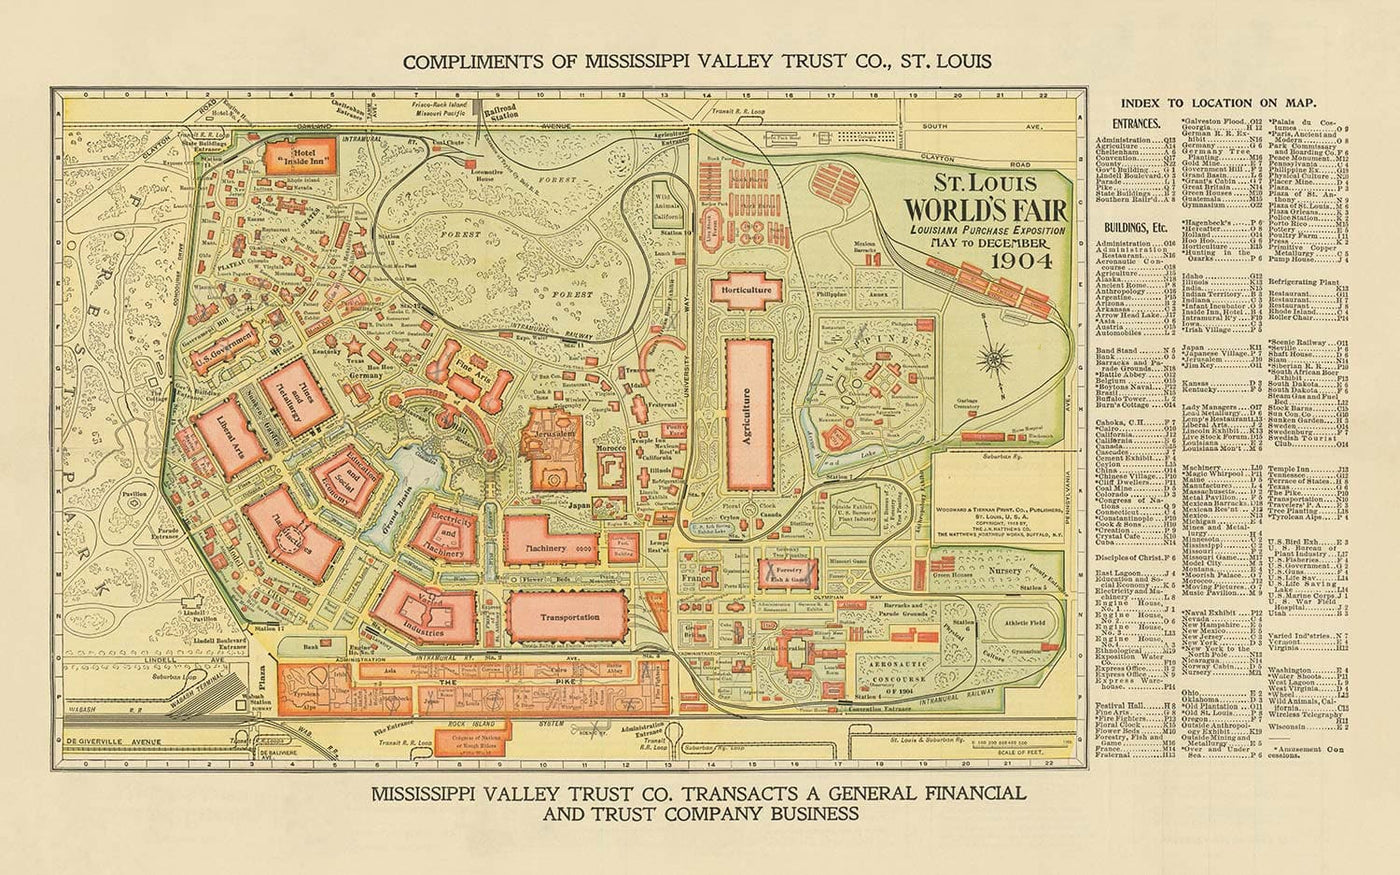 Alte Karte von St. Louis, Missouri, 1904 - Weltmesse, Louisiana Kauf Exposition - US History City Chart